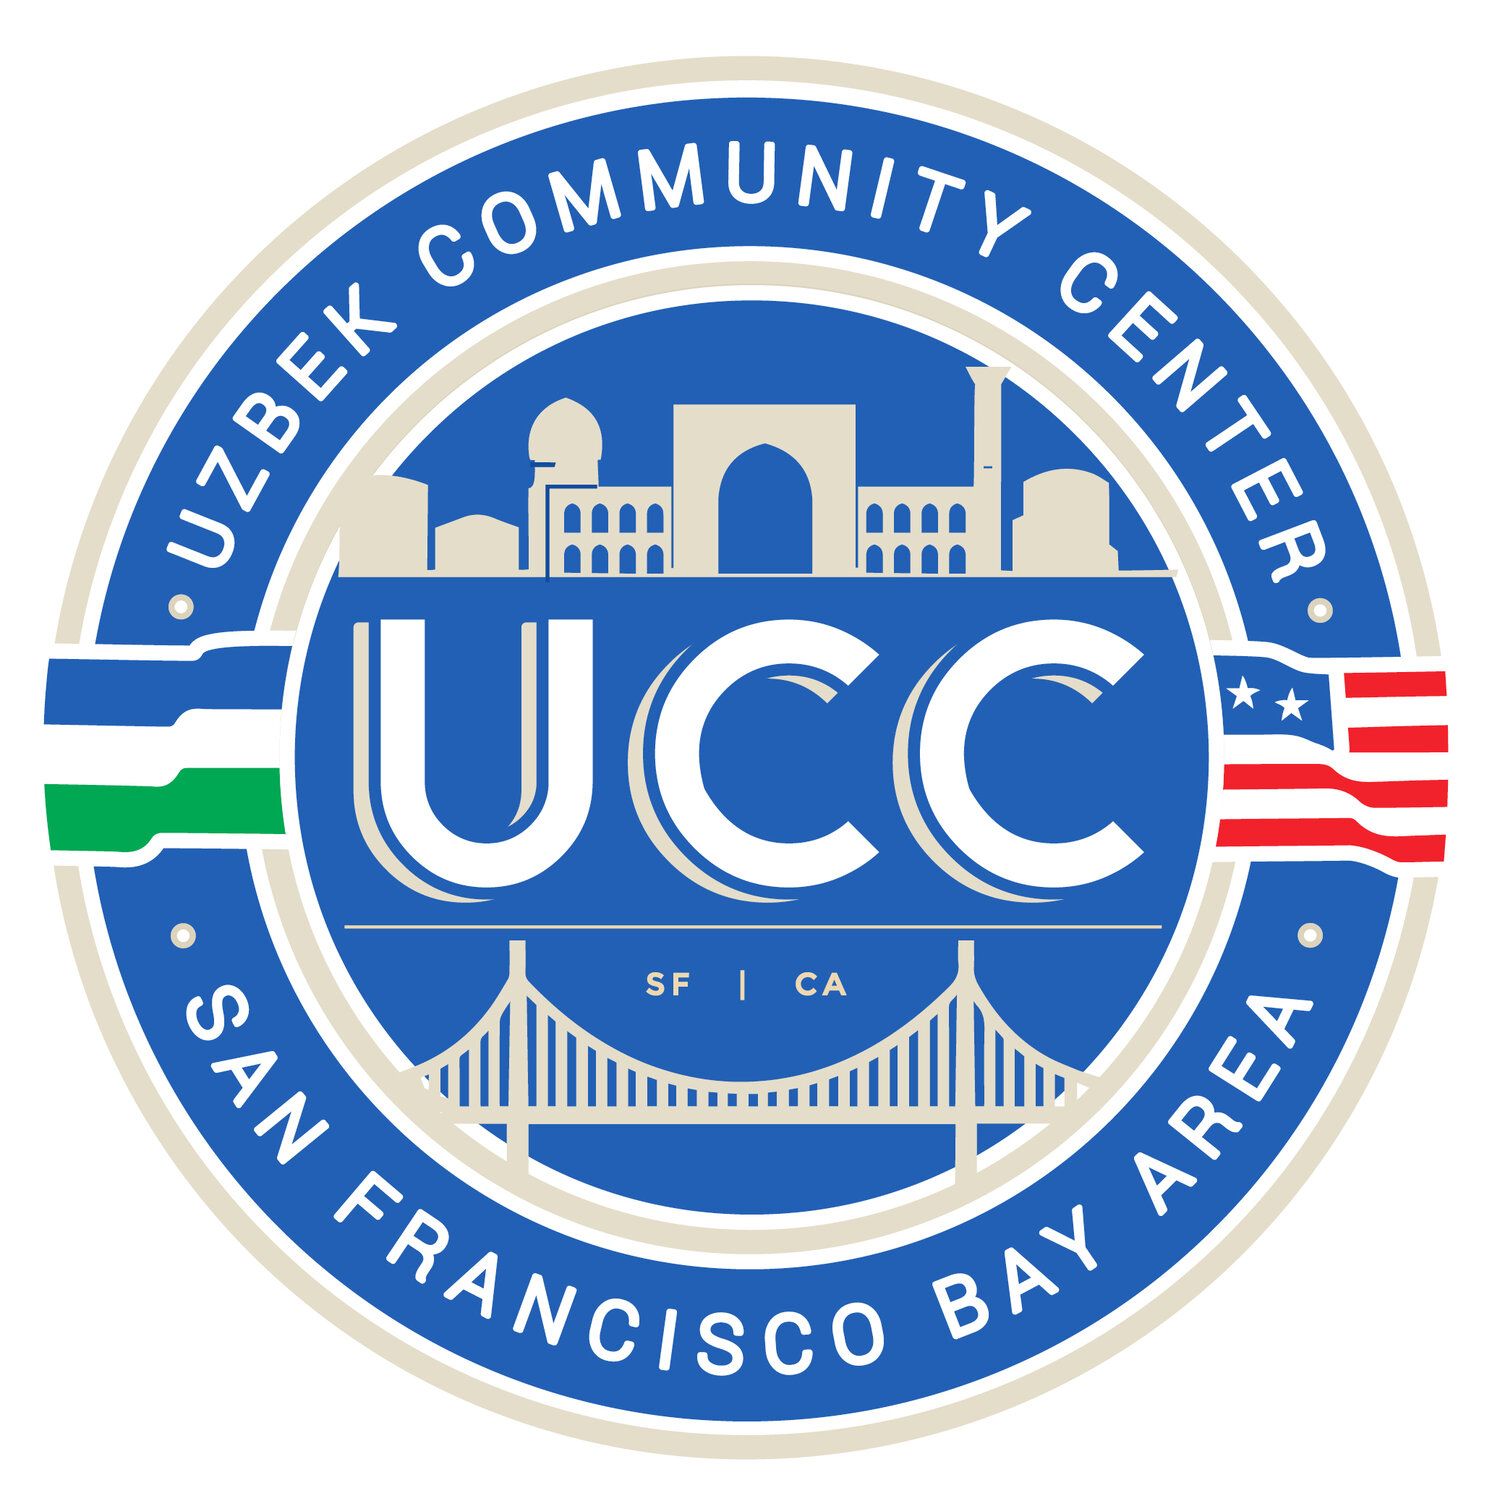 Uzbek Organizations Near Me - Uzbek Community Center of San Francisco Bay Area